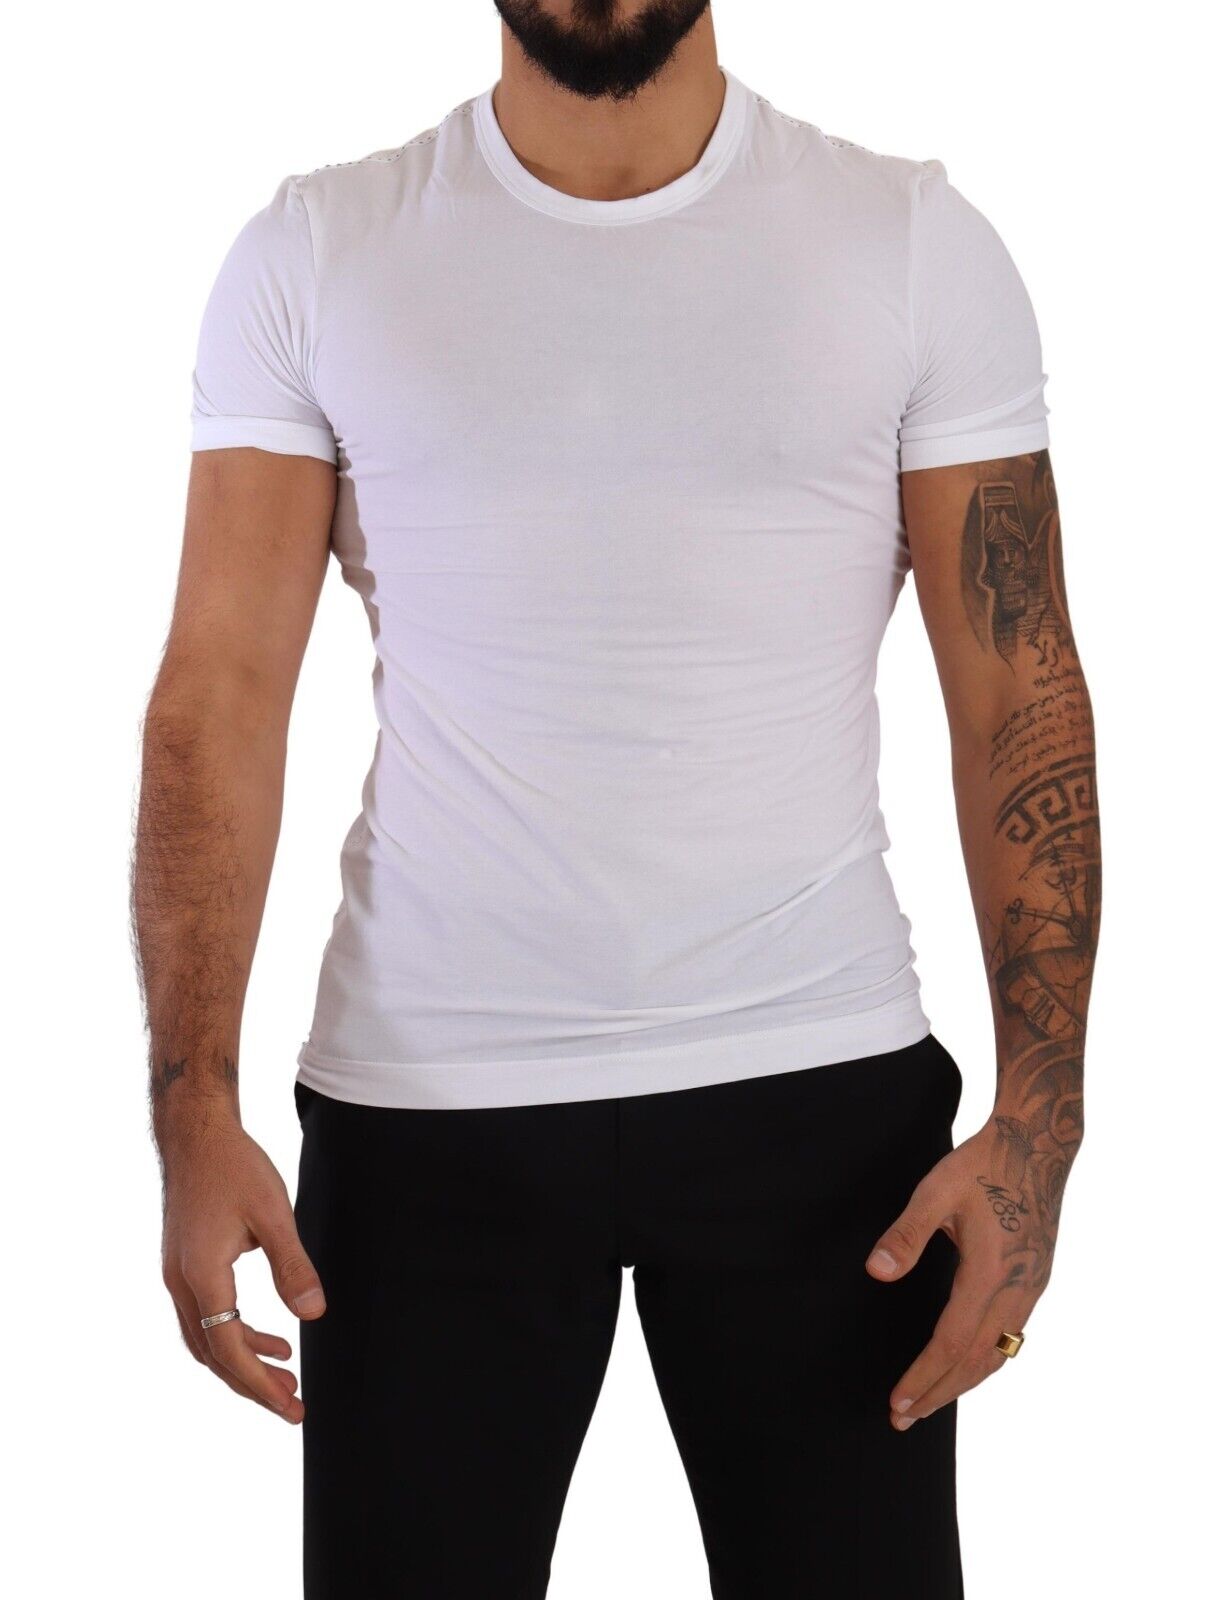 Konsultation Bedøvelsesmiddel redaktionelle Dolce & Gabbana White Round Neck Cotton Stretch T-shirt Underwear • Fashion  Brands Outlet